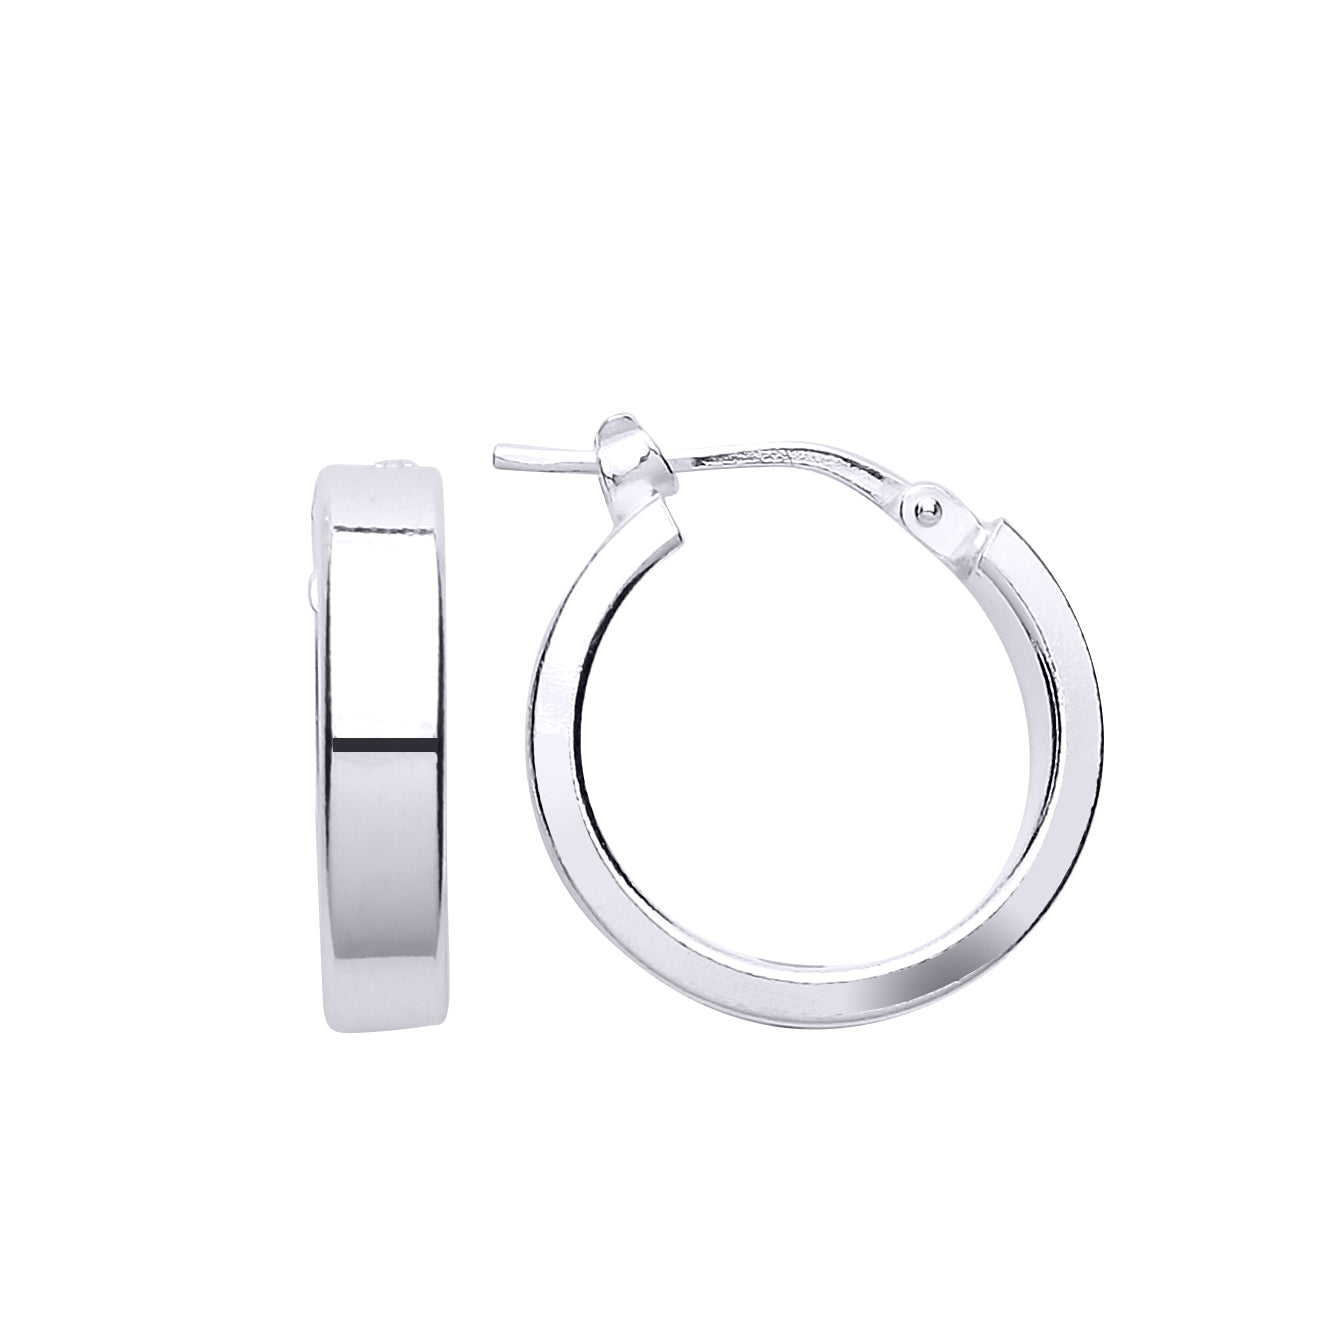 Silver  Square Tube Hoop Earrings 17mm - ER102